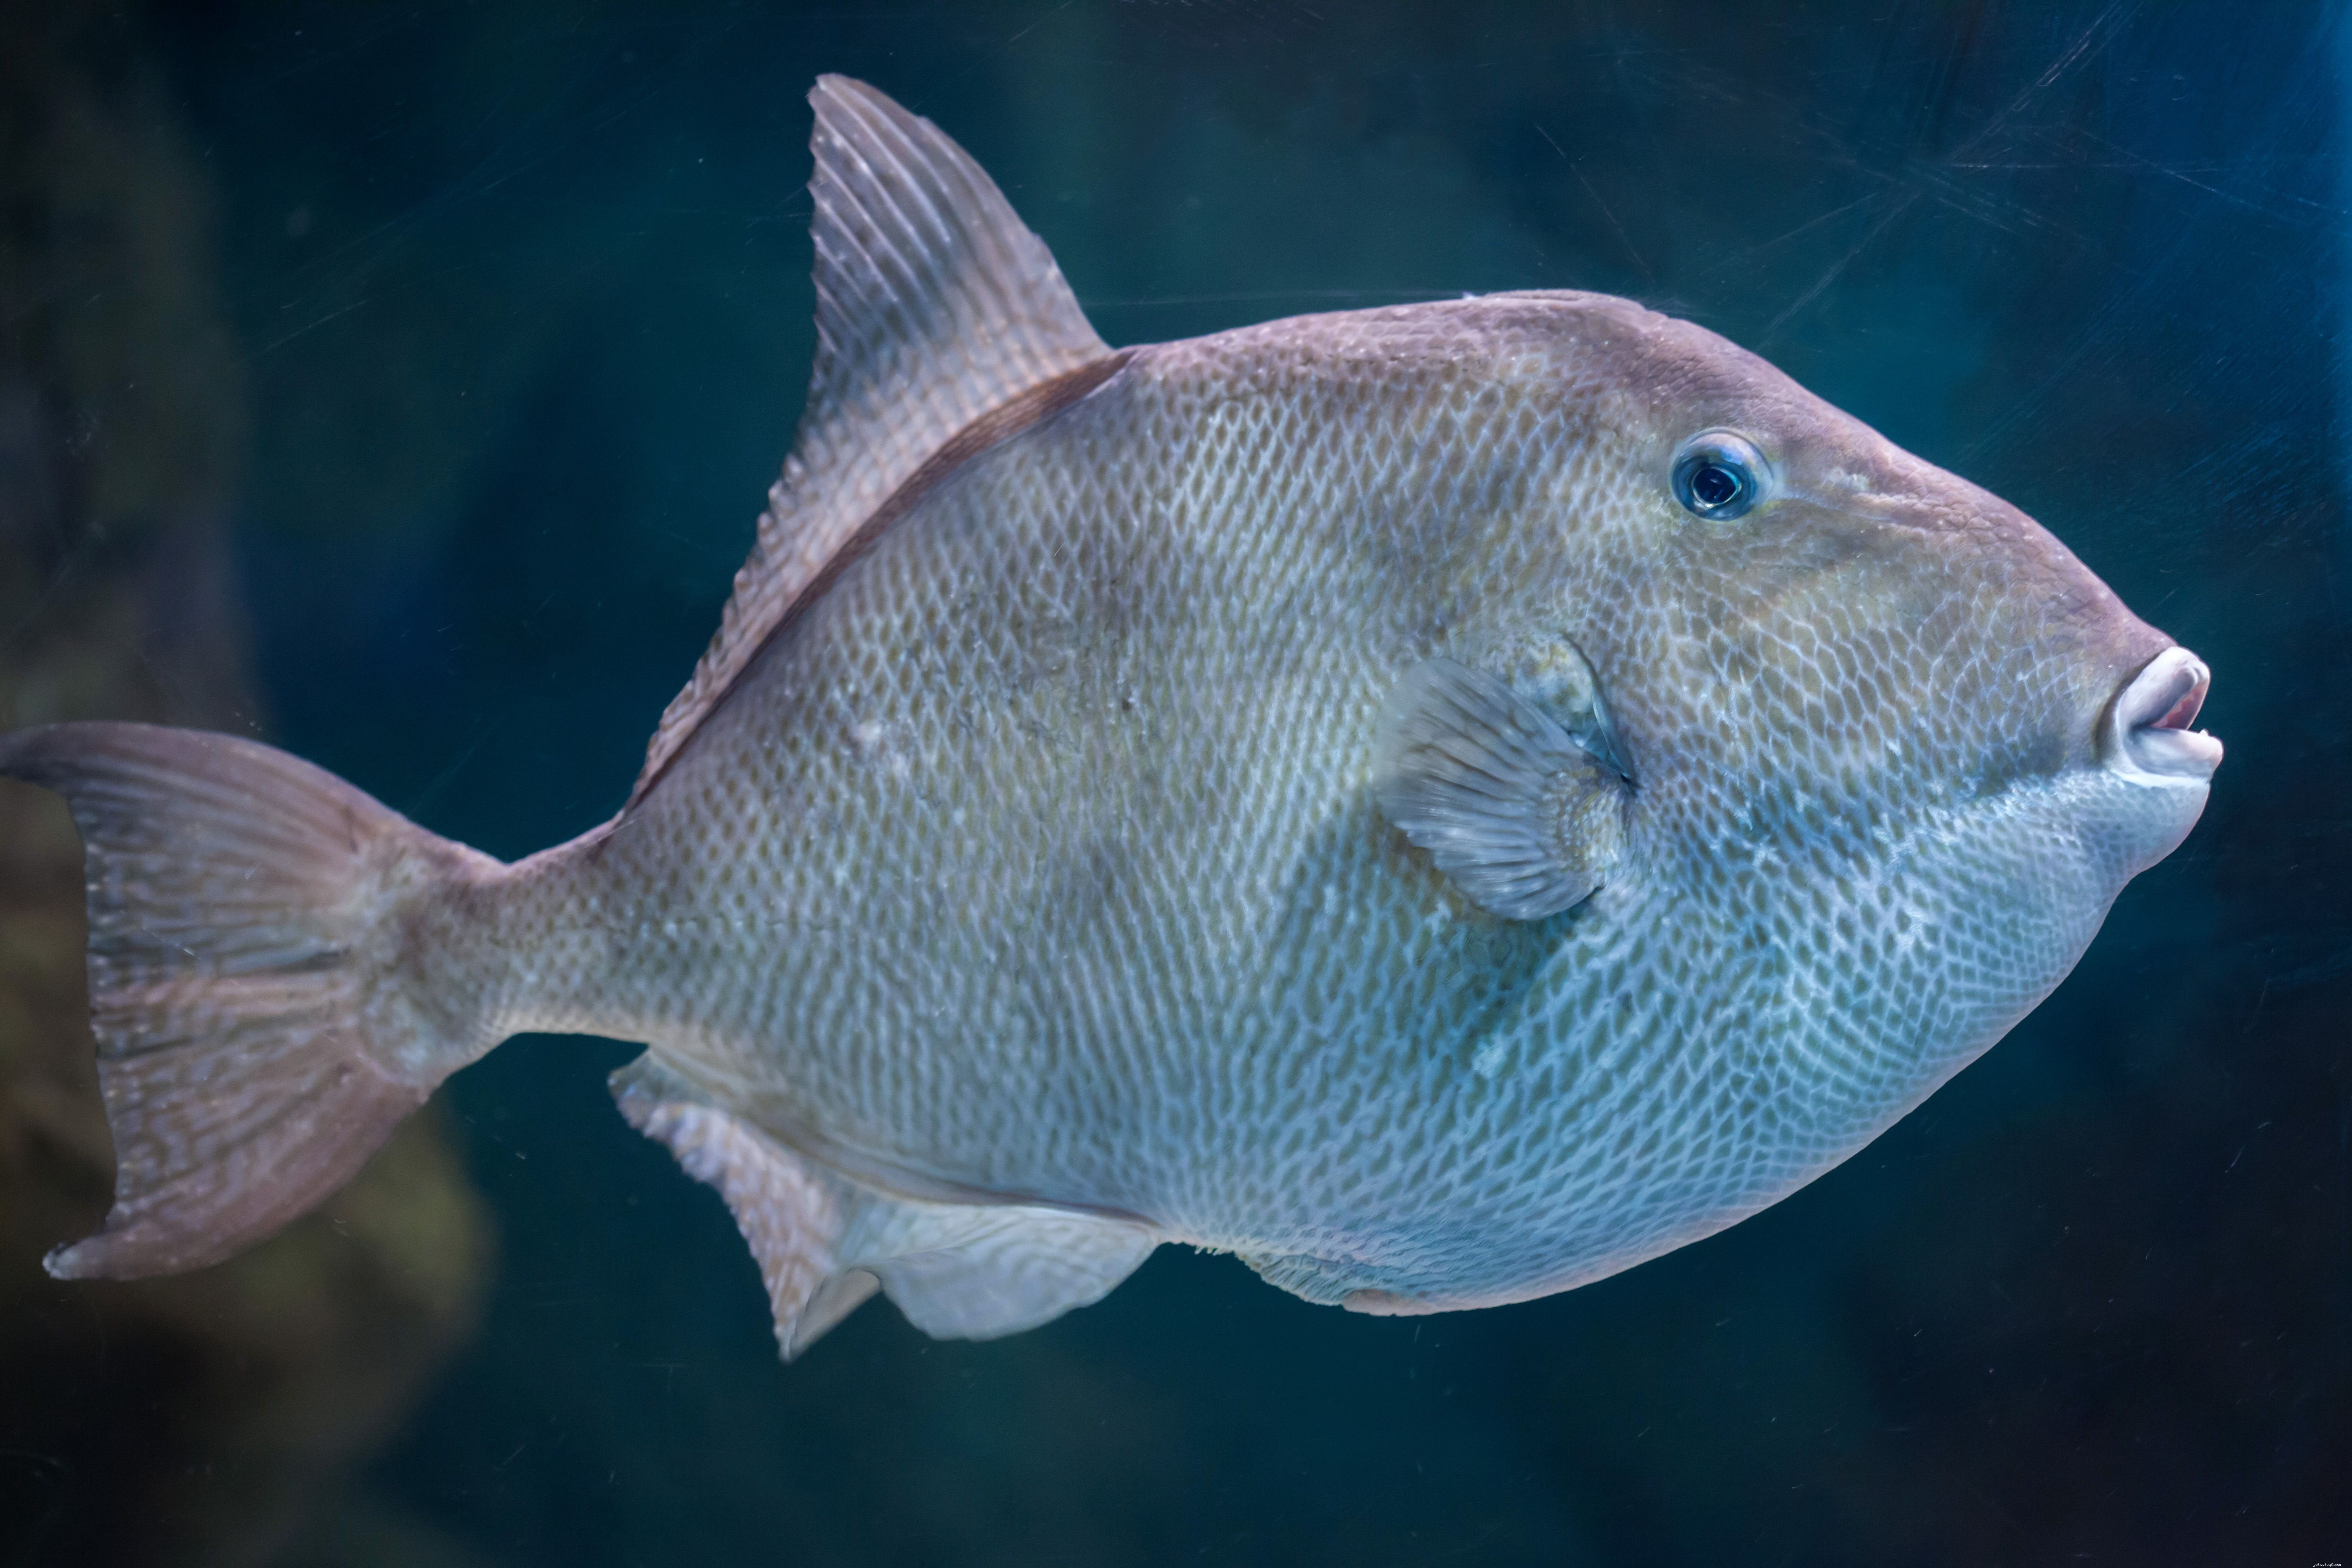 Triggerfish in uw aquarium houden